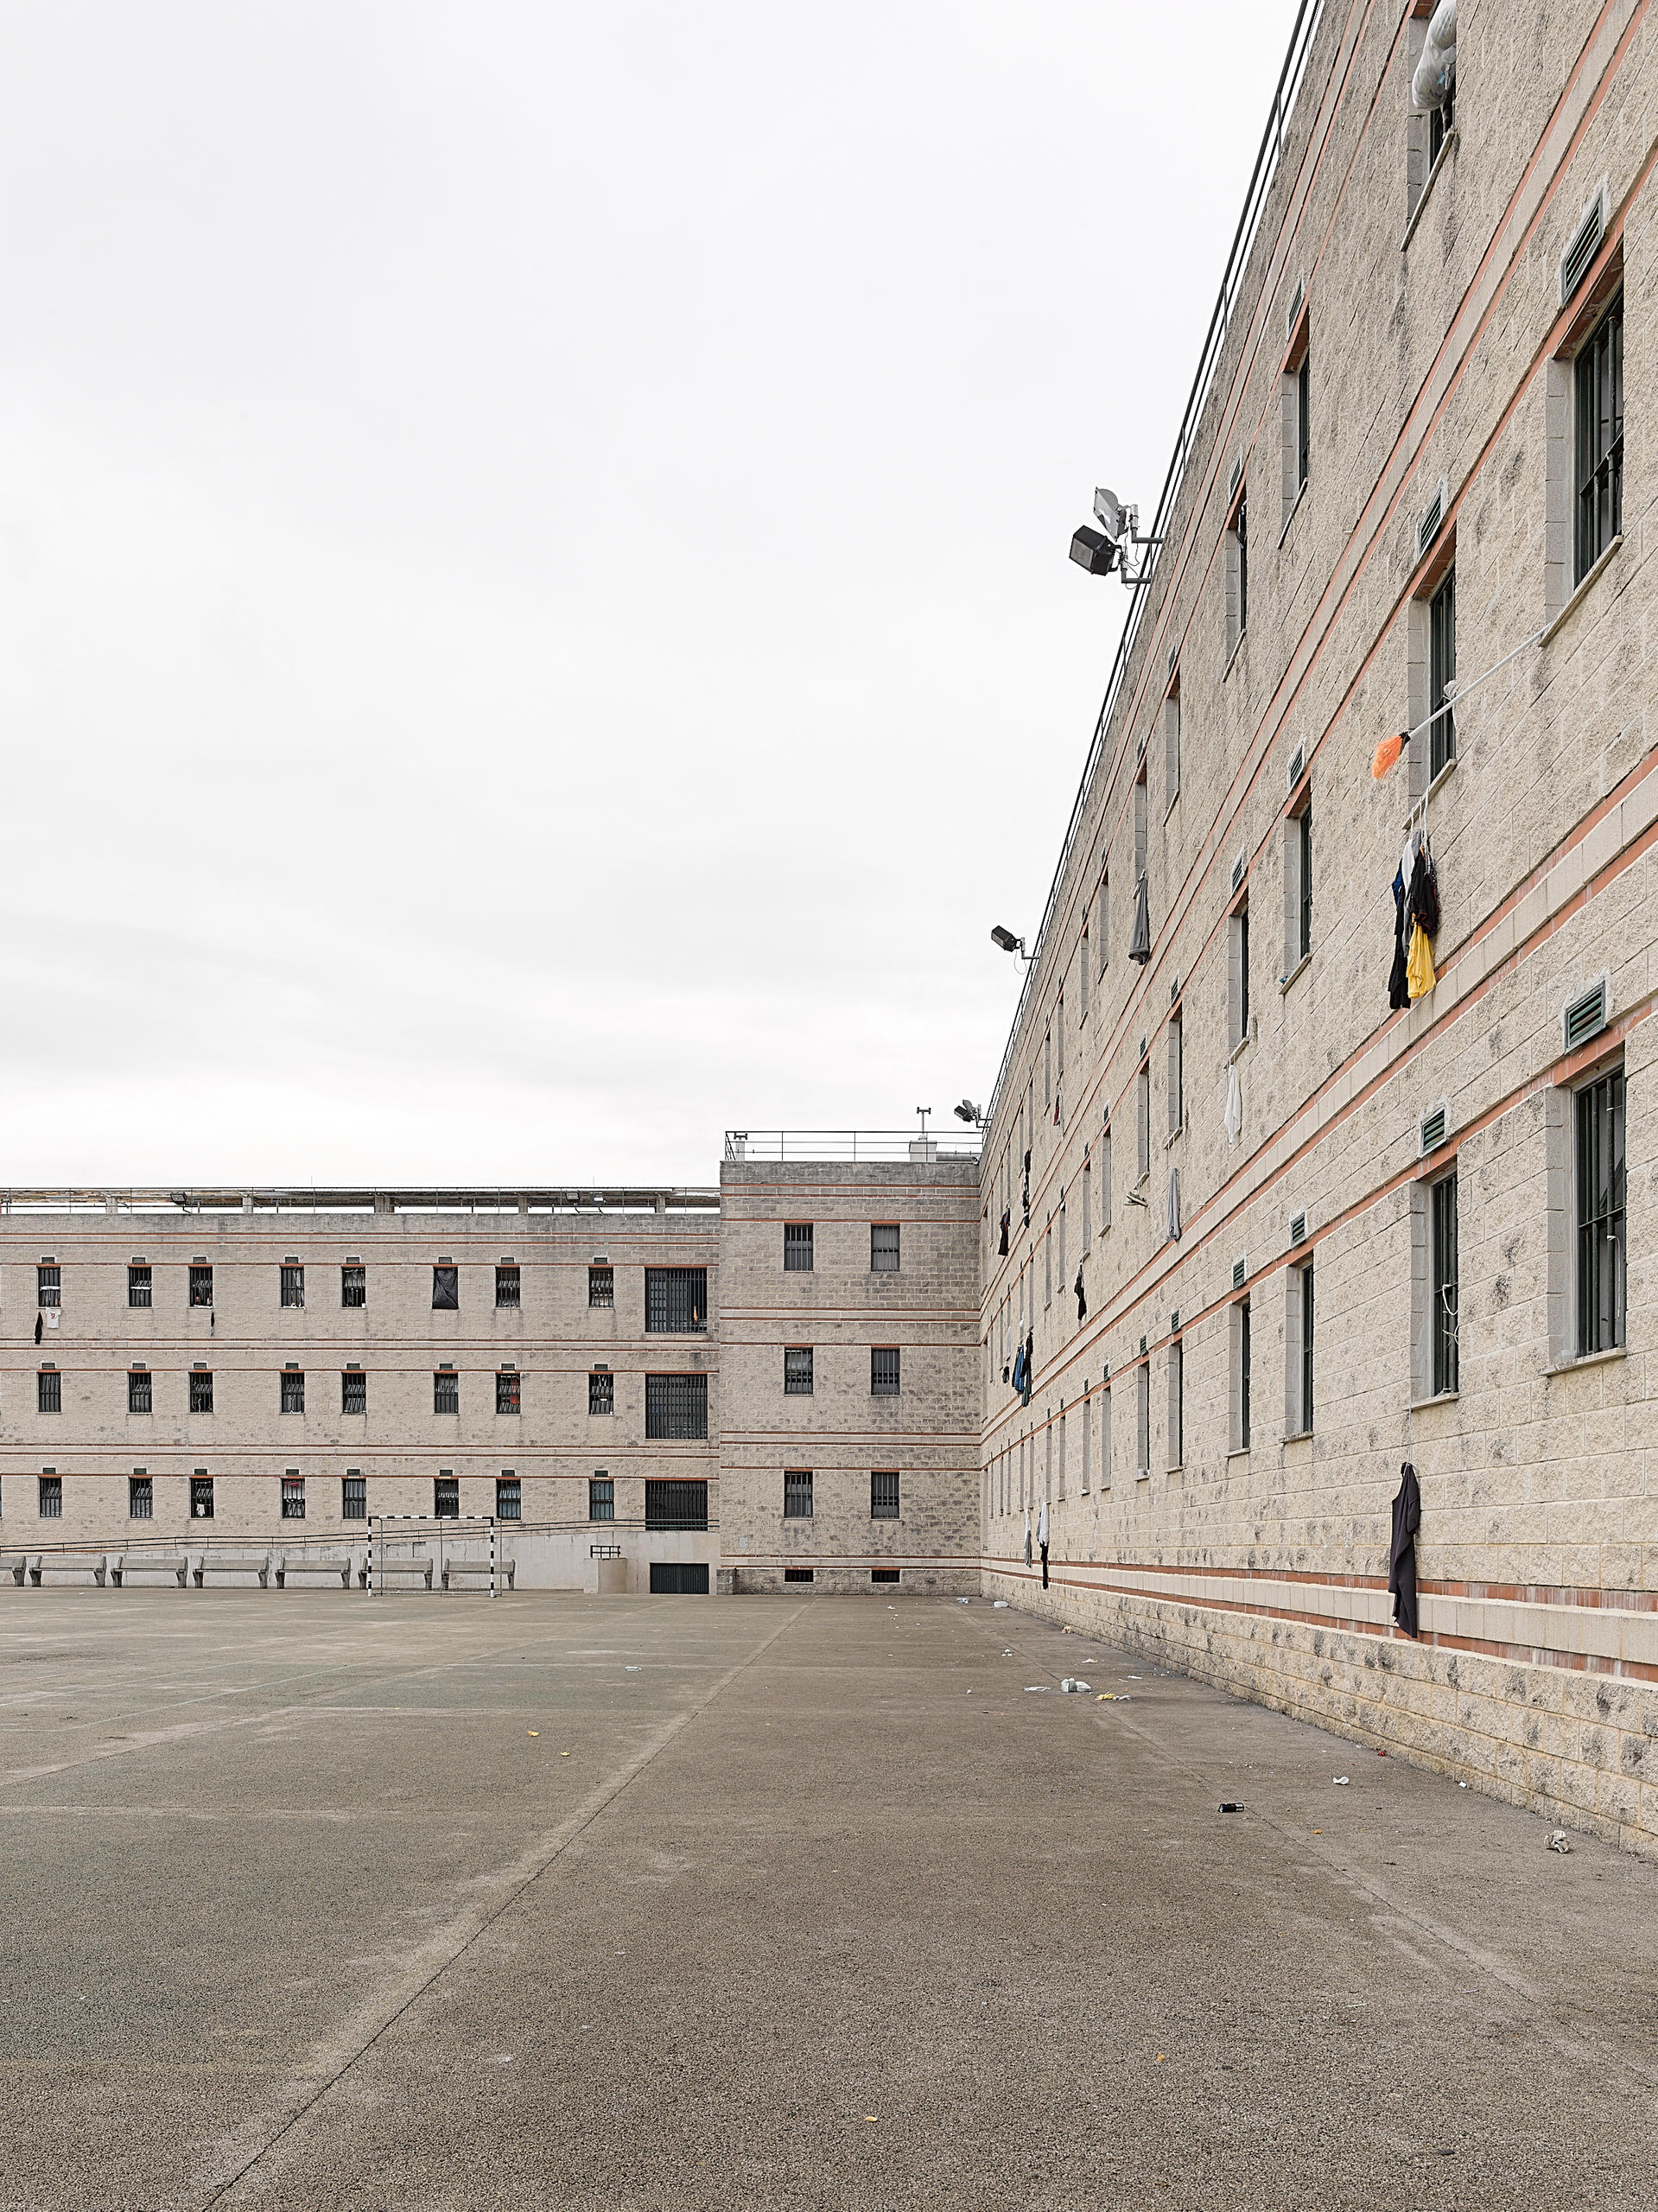 Fachada da penitenciária da Carregueira, em Portugal